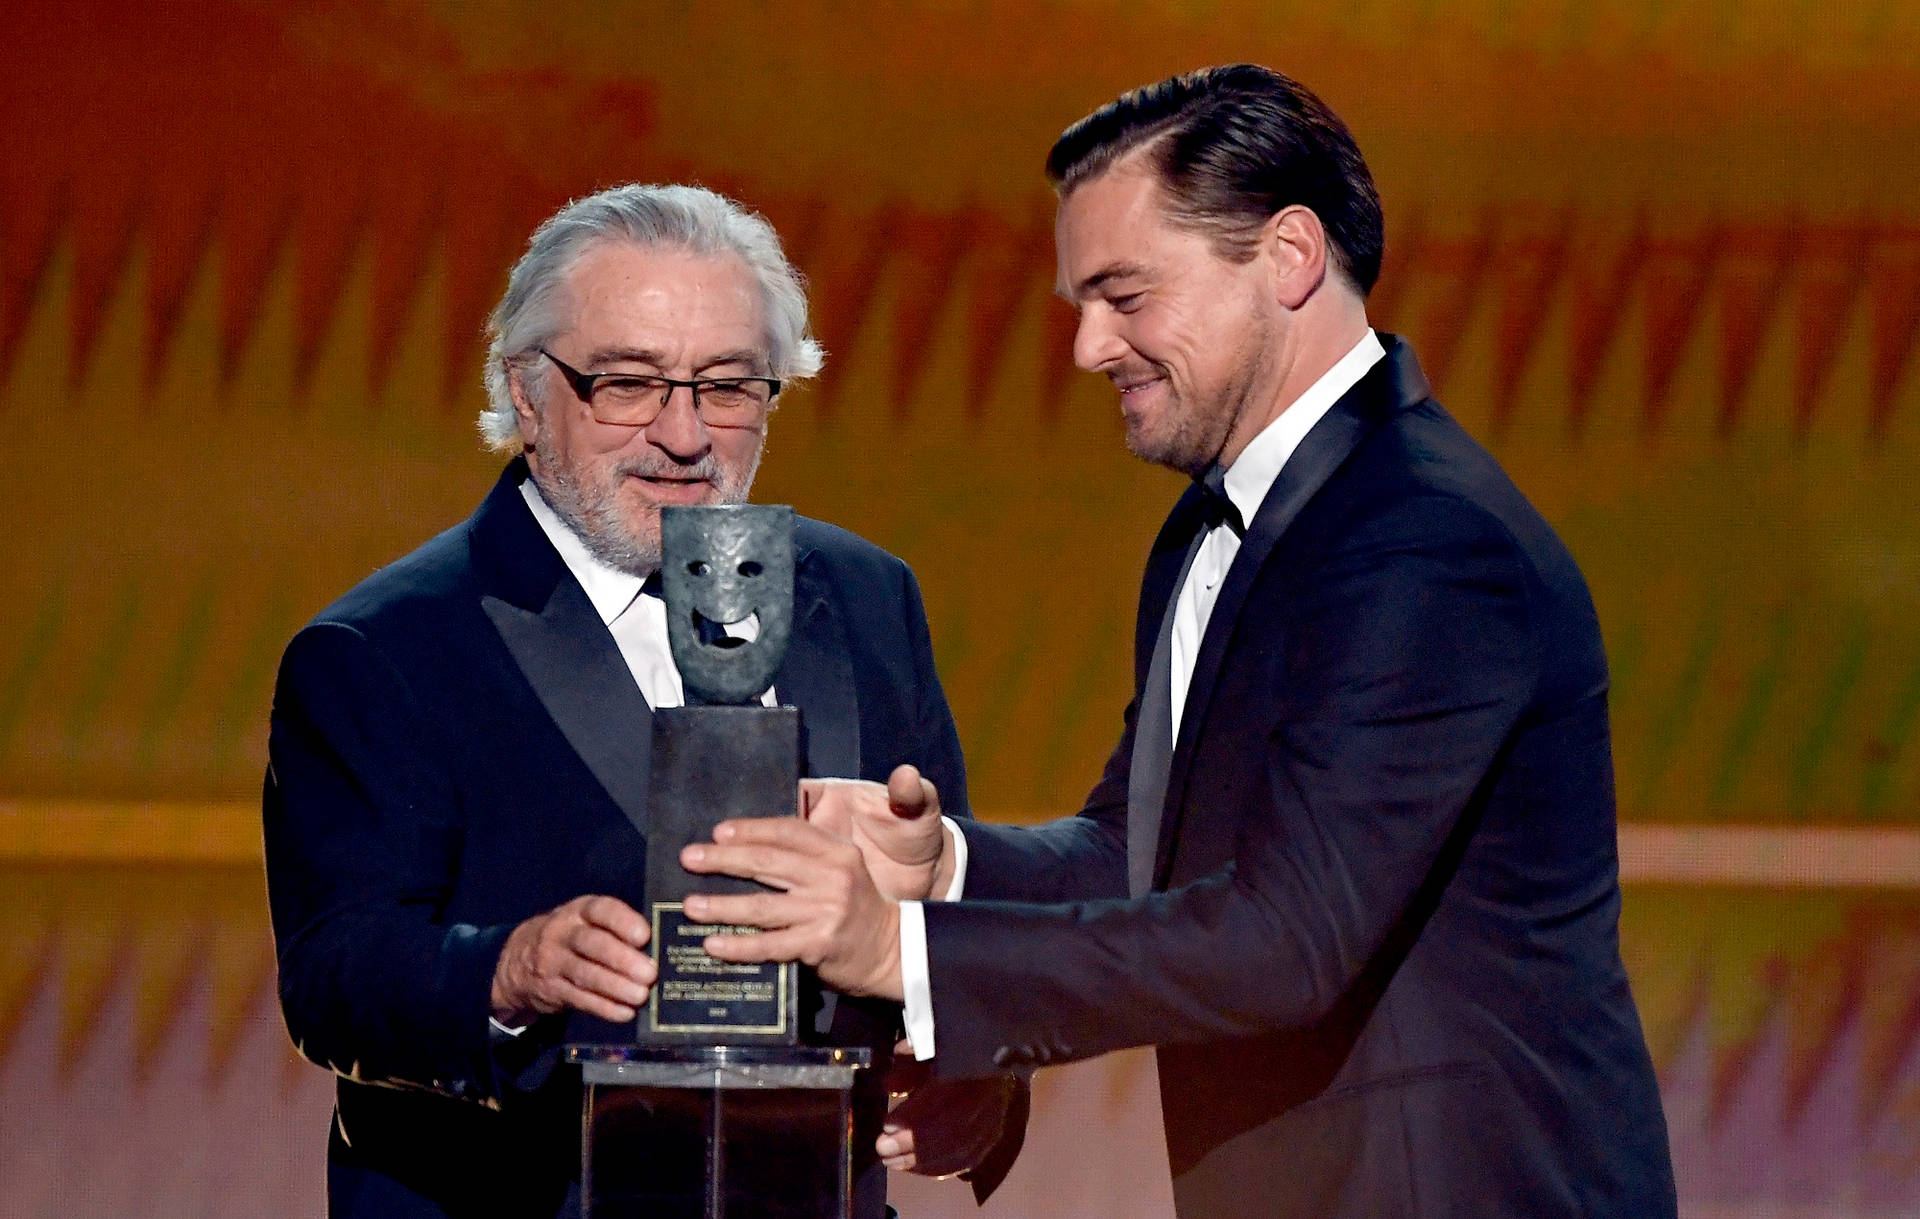 Sag Awards Robert De Niro